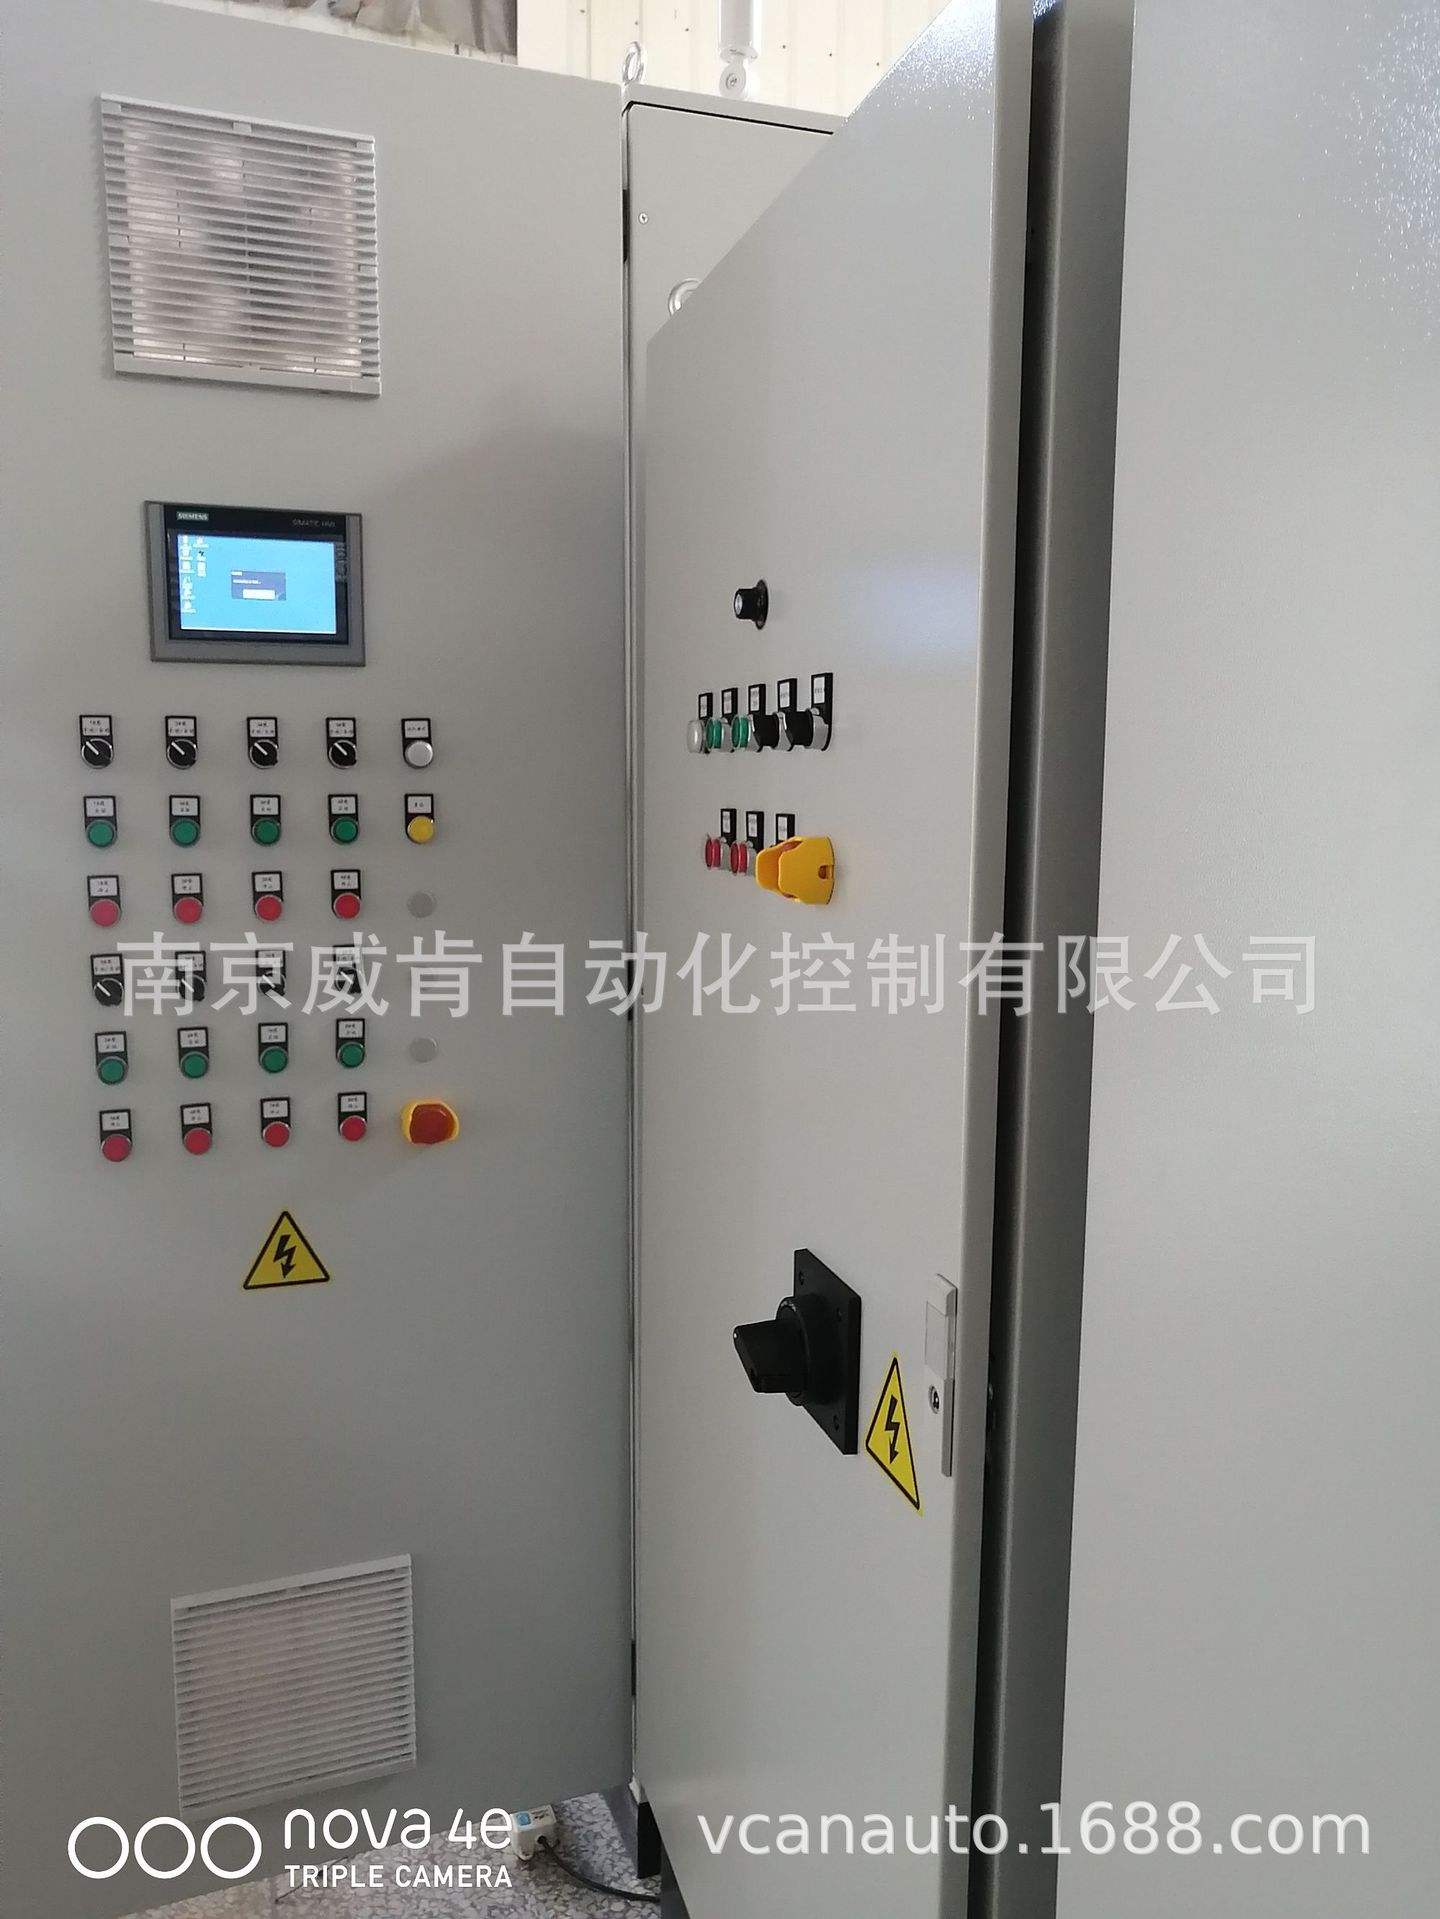 南京汽车控制柜(南京汽车电器有限公司)